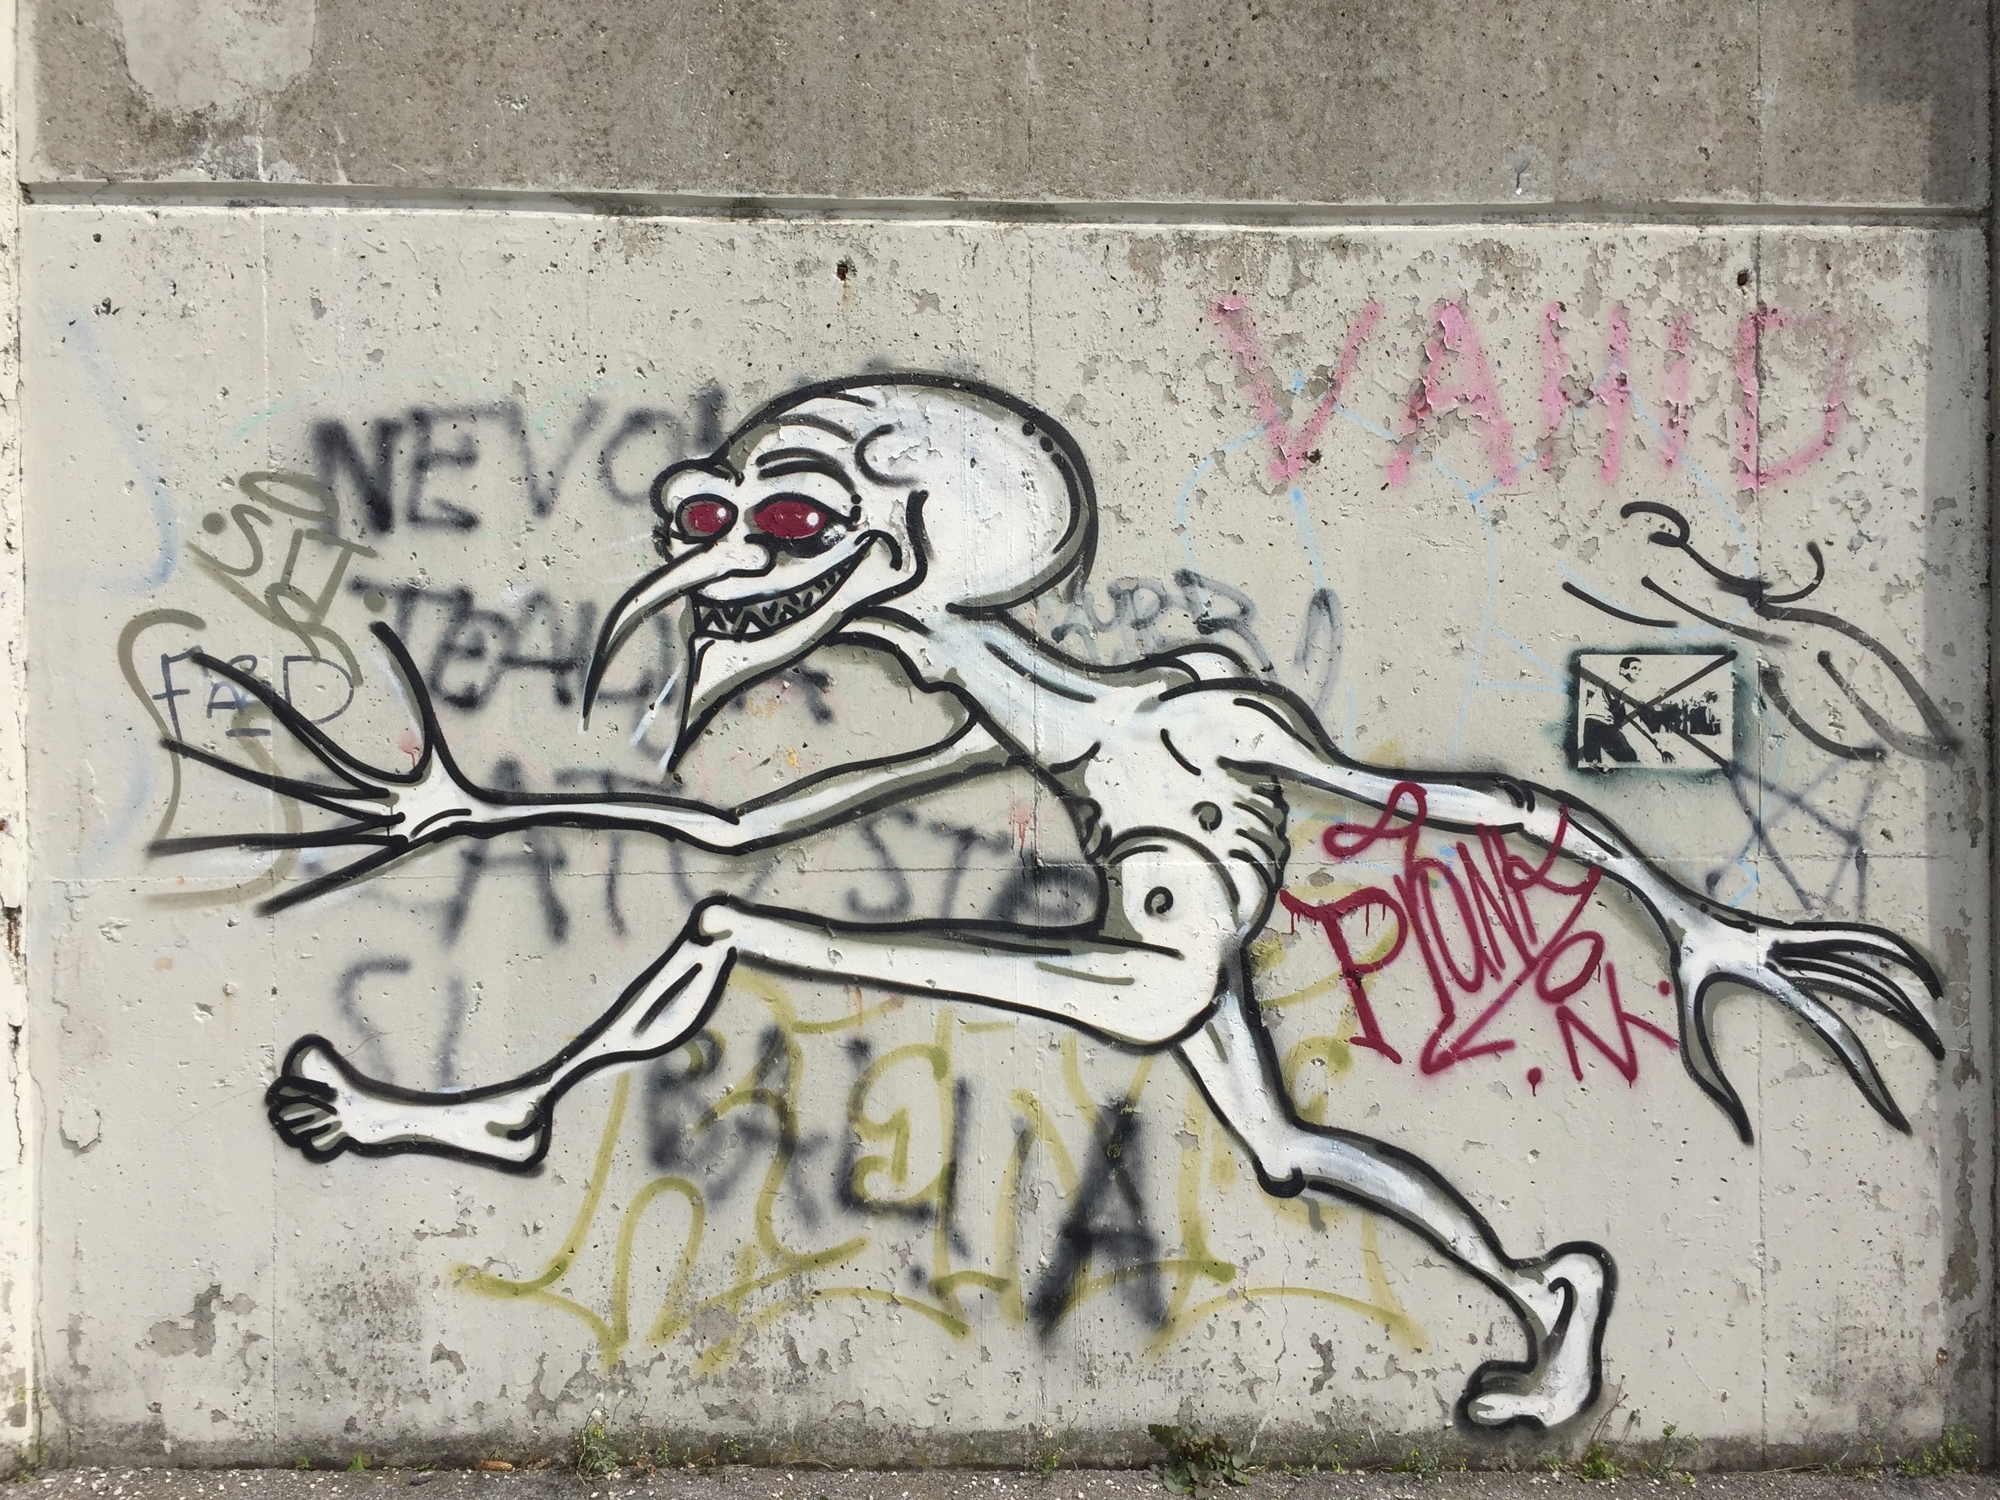 Grafittibild eines laufenden Gnoms mit spitzer Nase im Park vor dem Schafbergbad